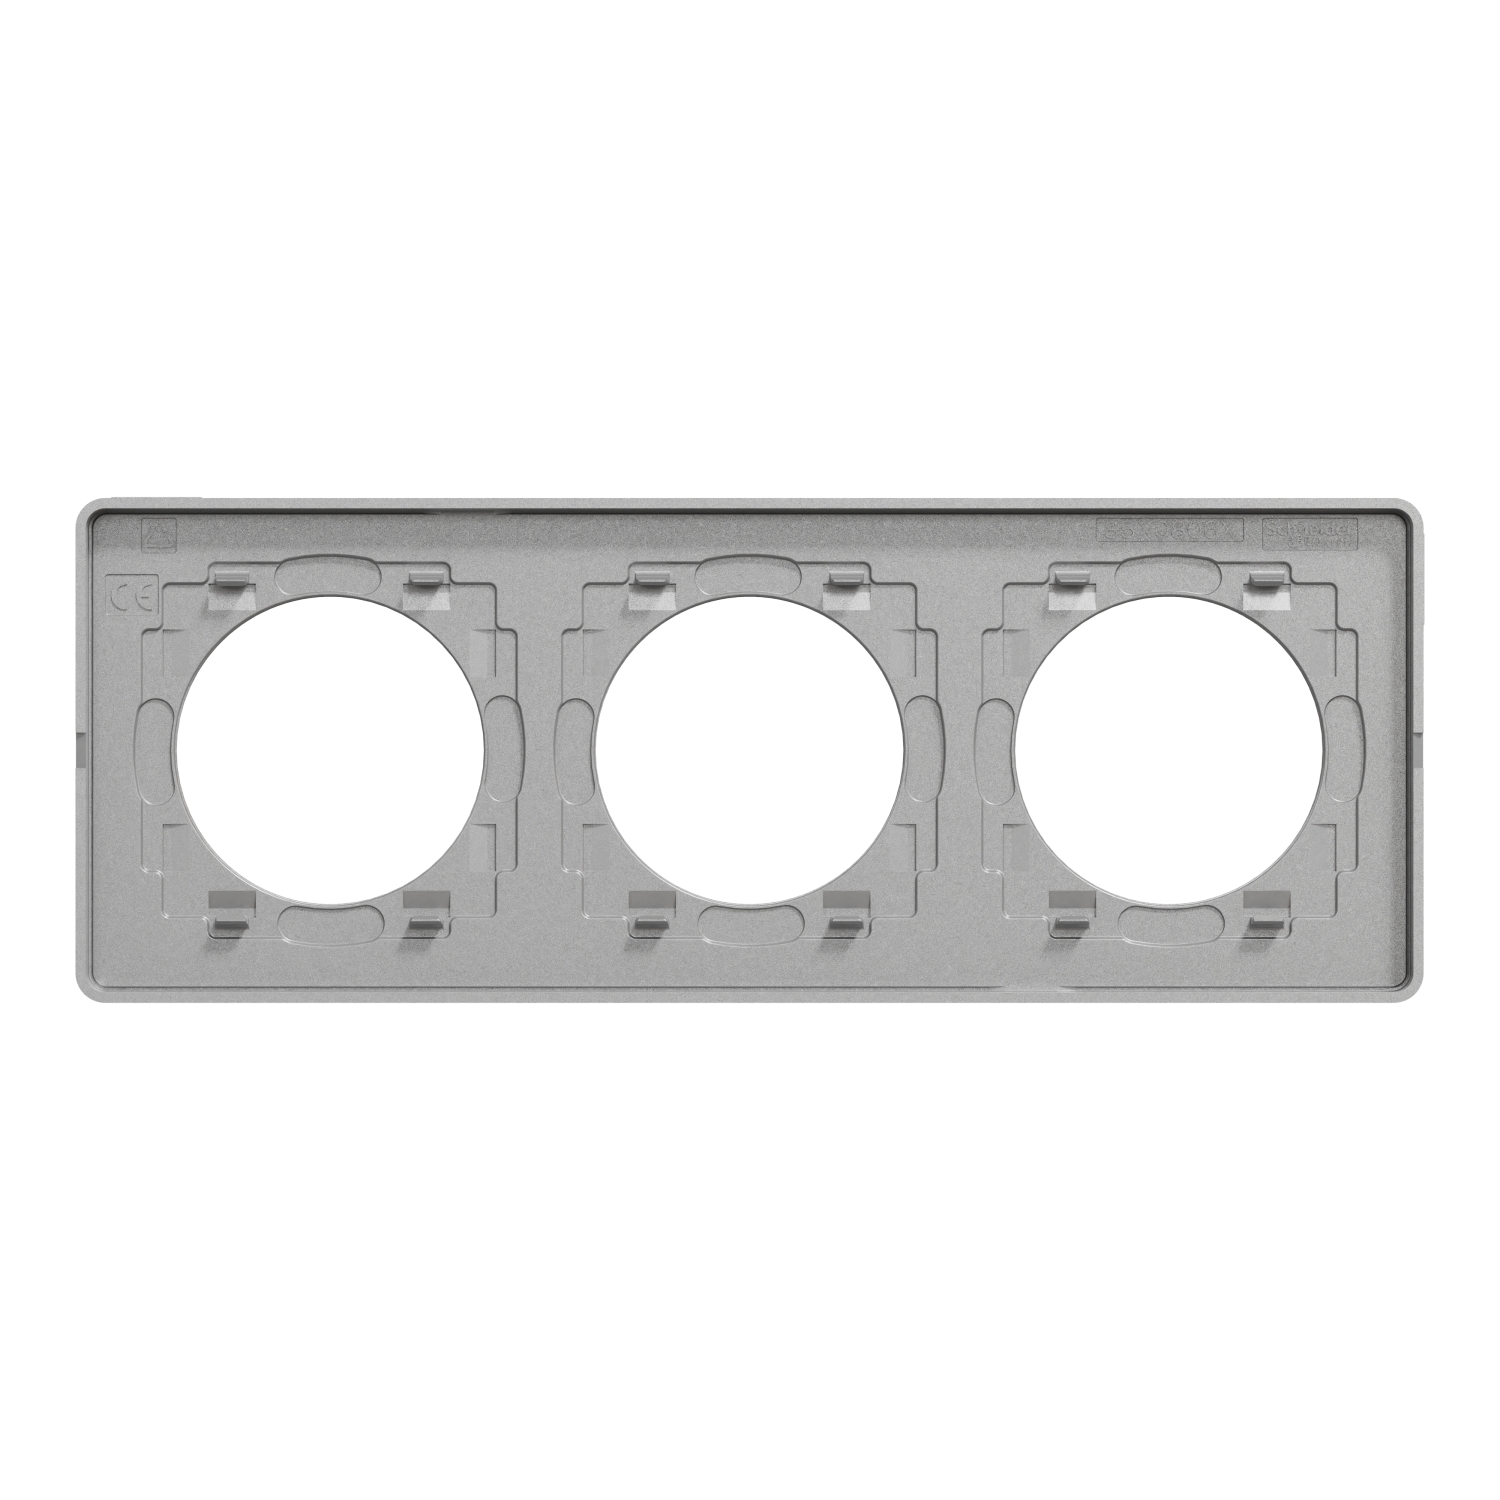 Schneider - Plaque 3 poste Aluminium Odace Touch - Finition Ardoise avec liseré alu - Réf : S530806V